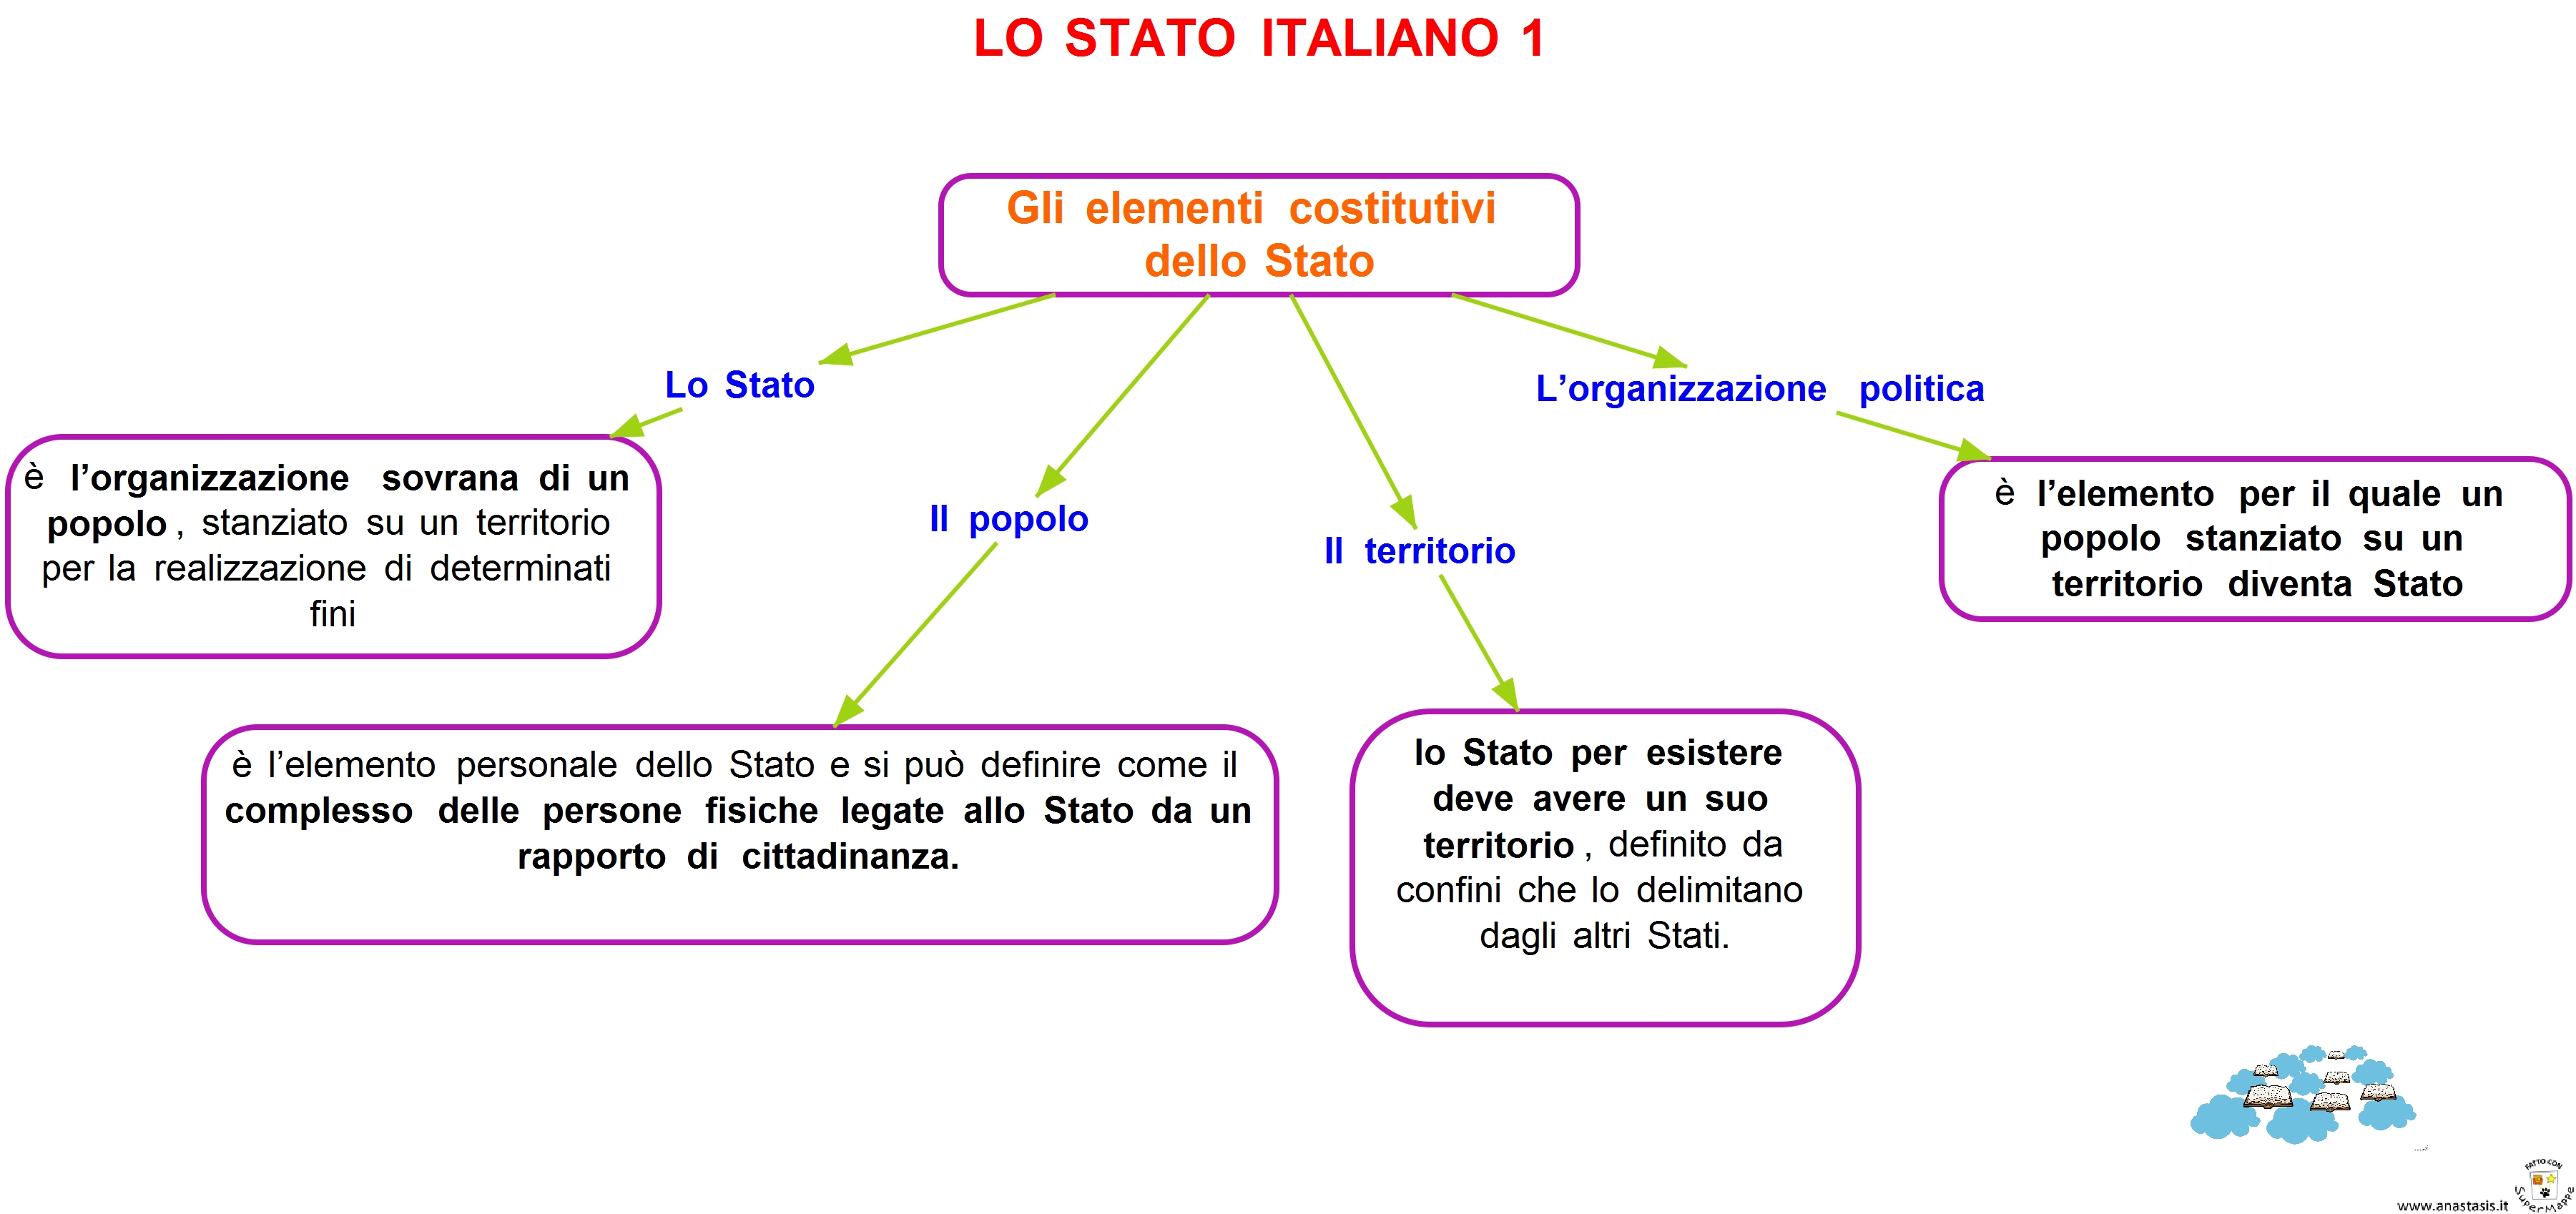 Lo stato italiano